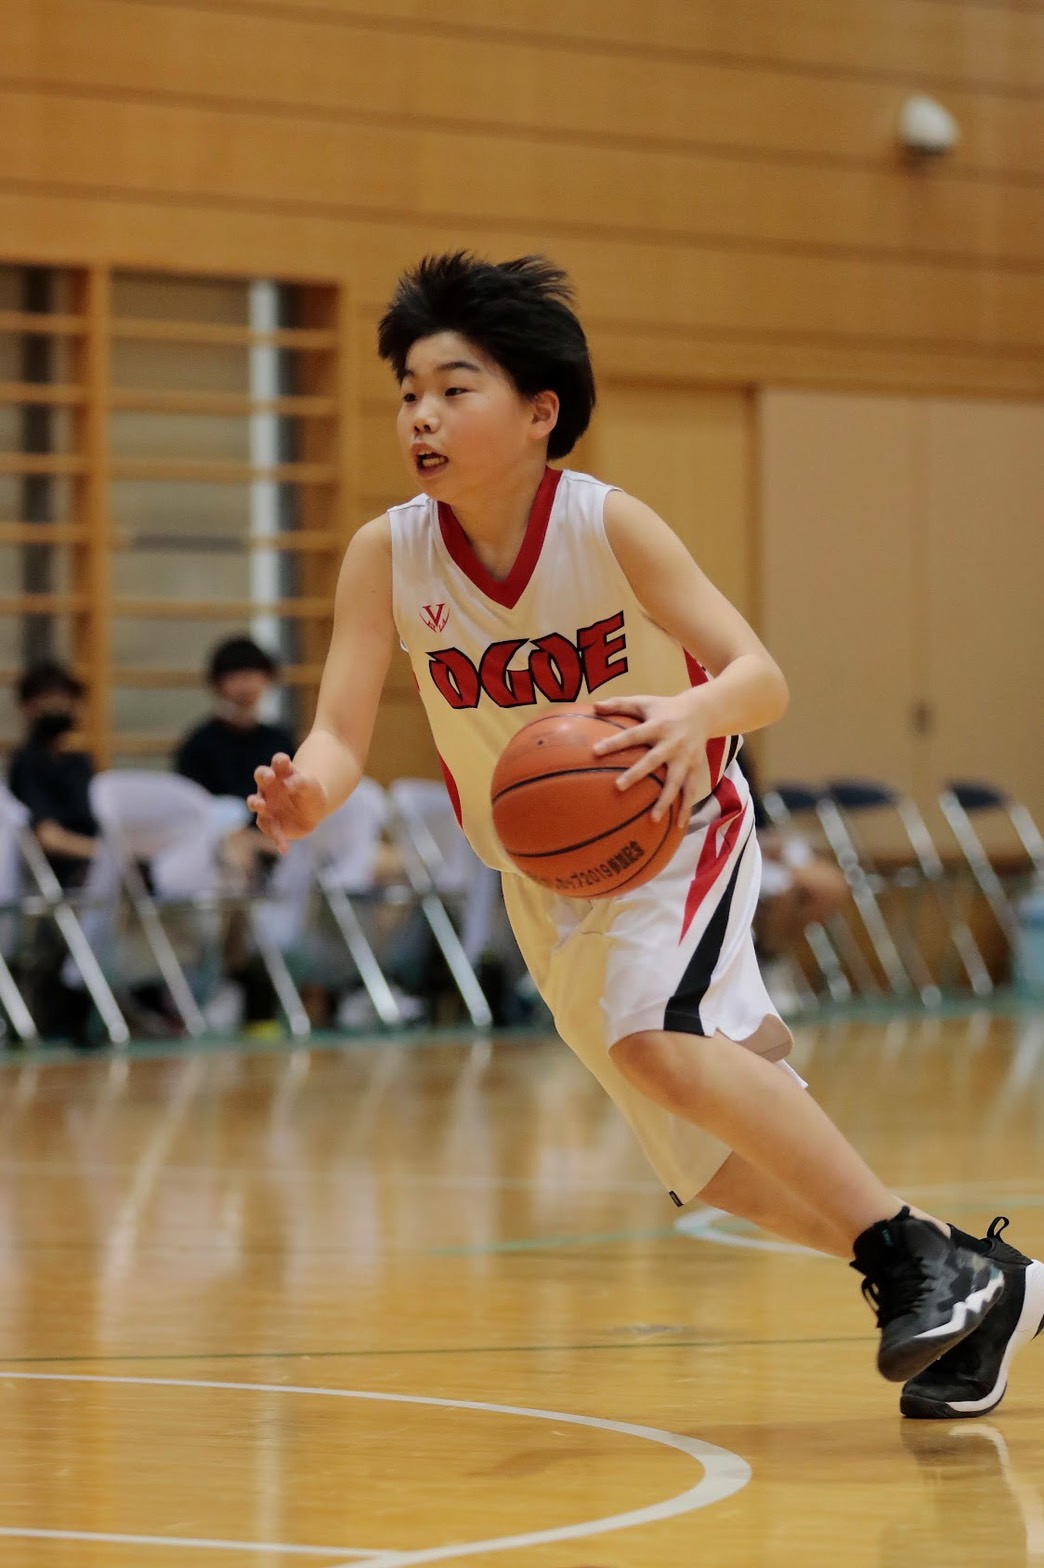 大越ミニバスケットボールスポーツ少年団 - 田村市ホームページ